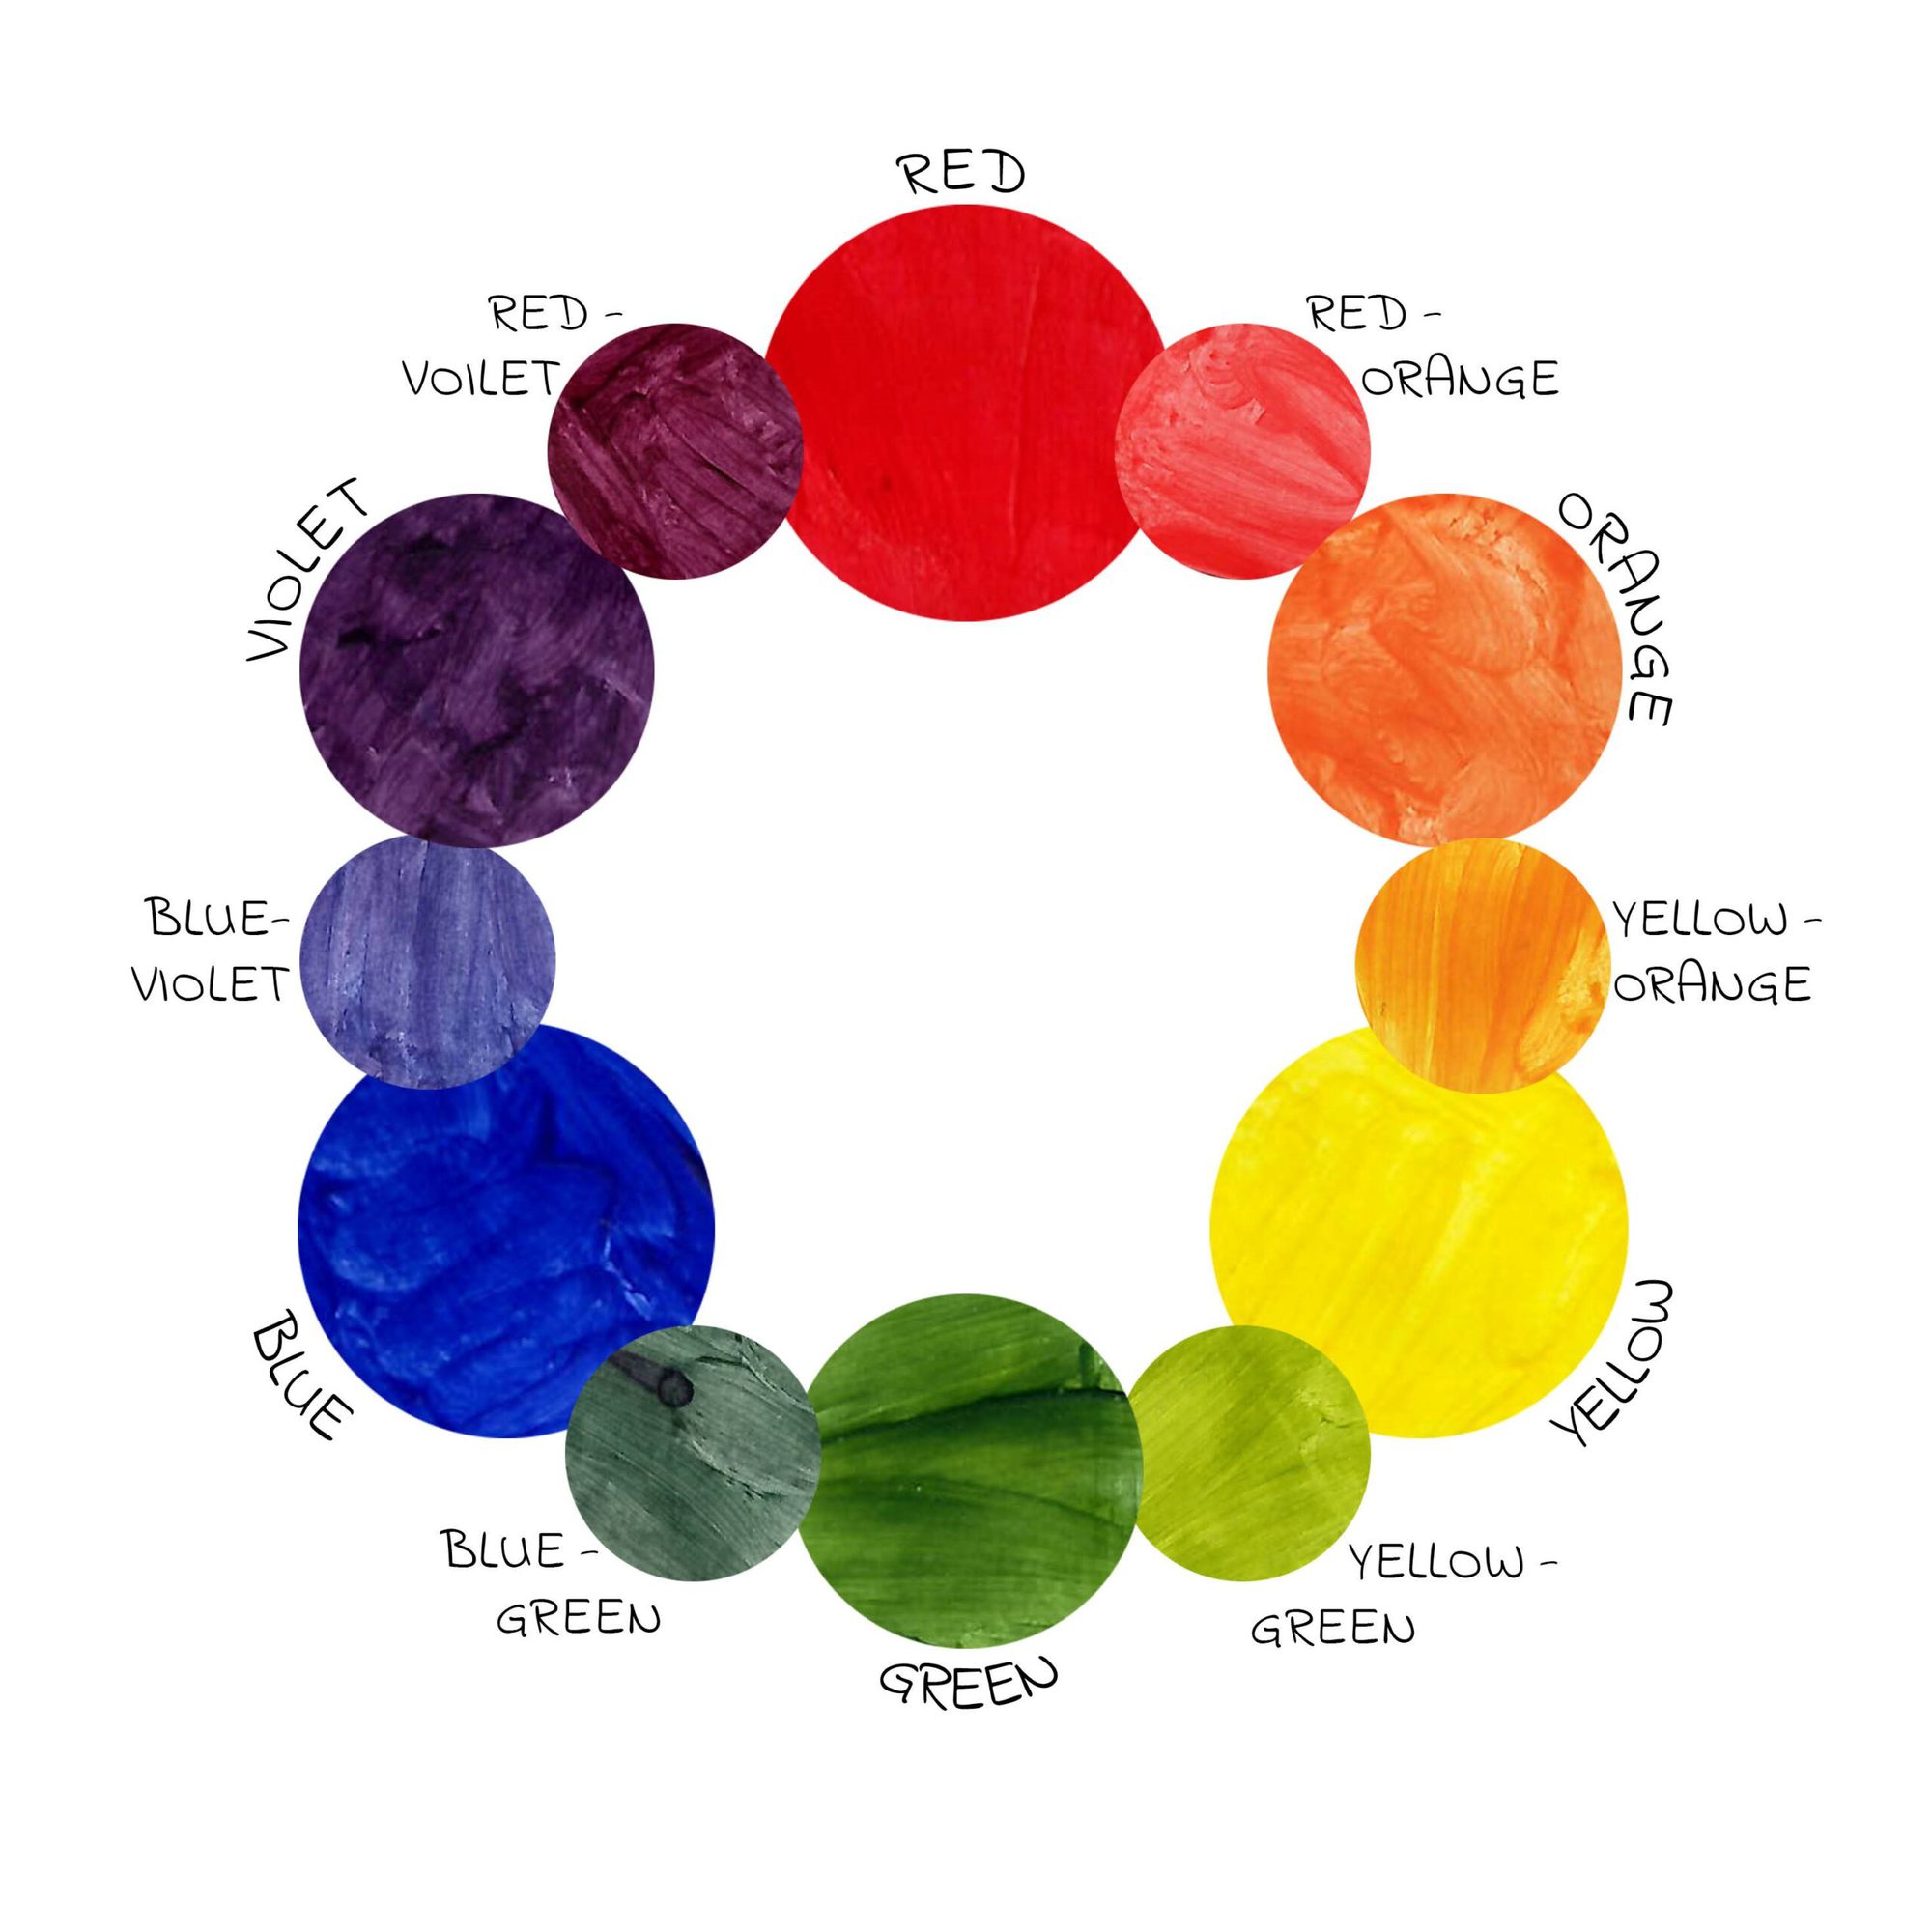 johannes itten color wheel theory